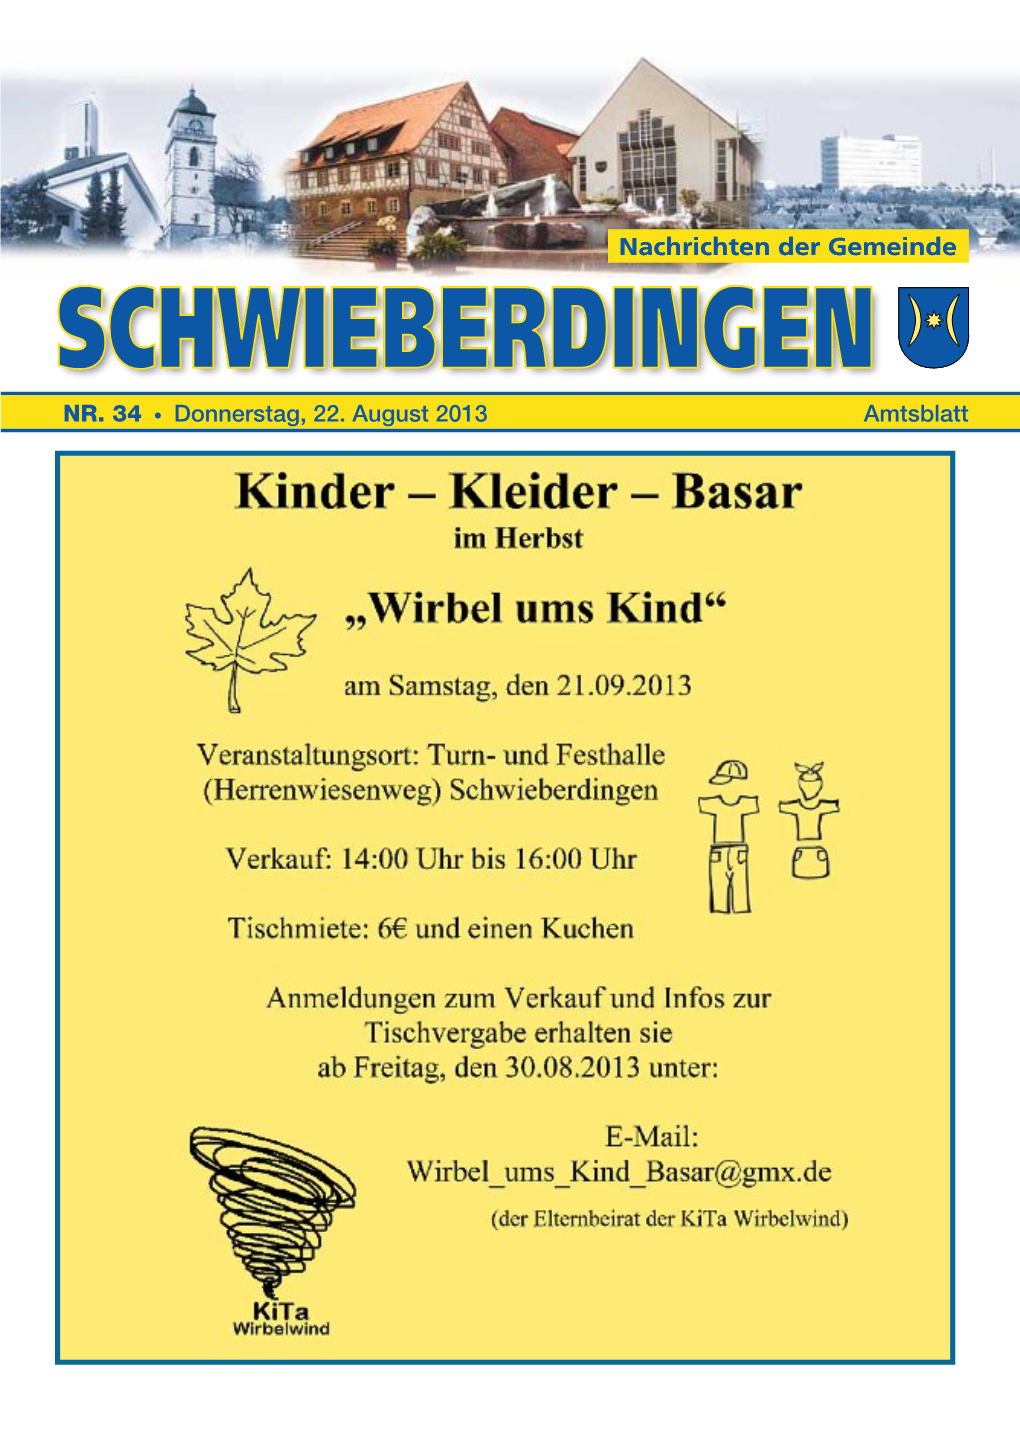 NR. 34 • Donnerstag, 22. August 2013 Amtsblatt Woche 34 Nachrichten 2 Donnerstag, 22